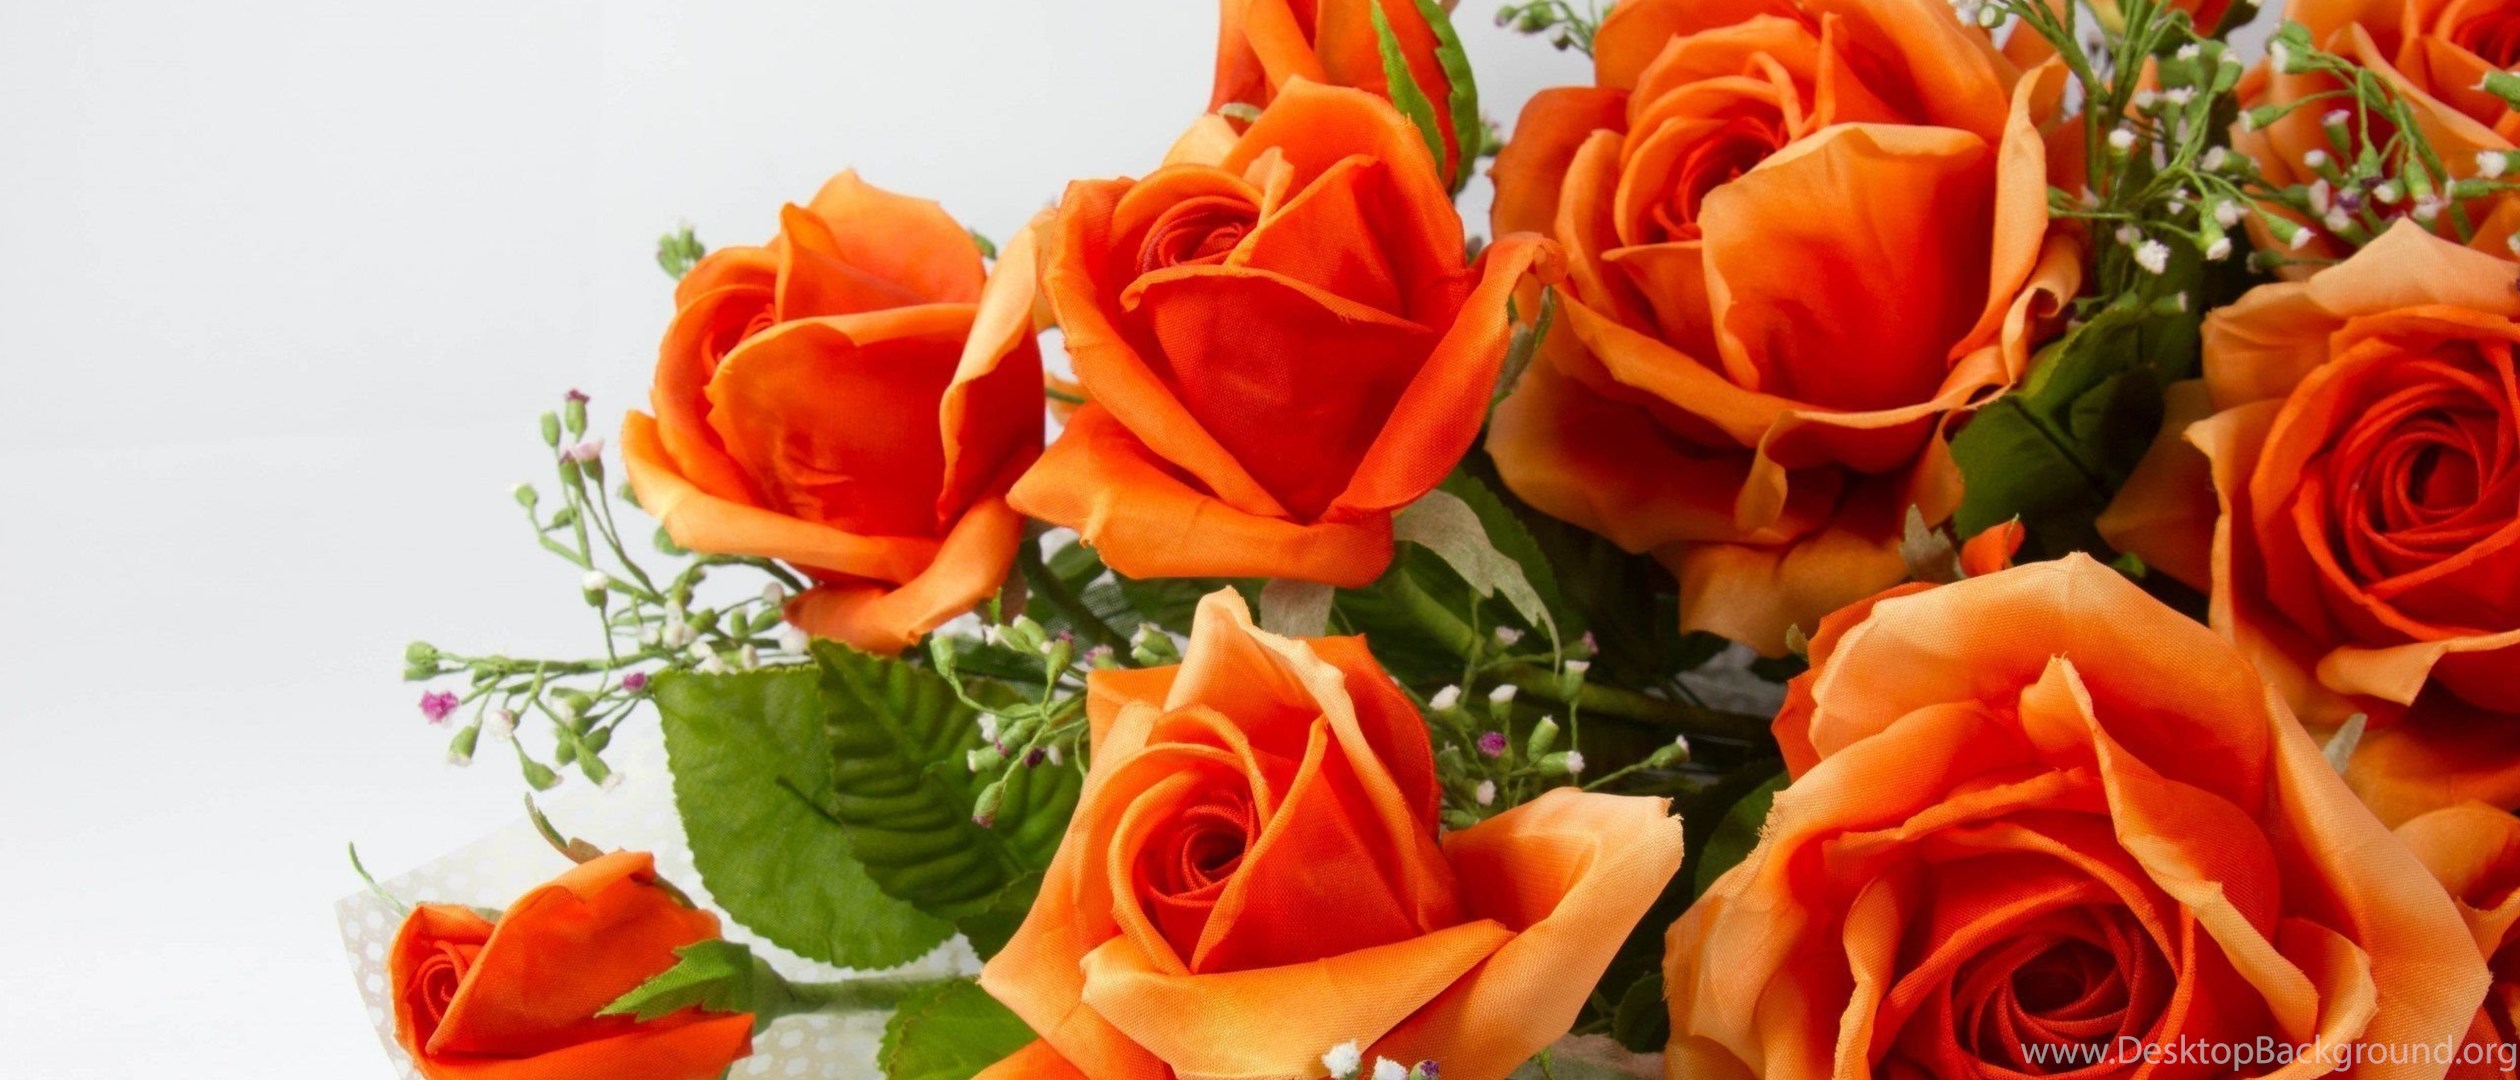 Очаровашка картинки. Оранжевые розы. Красивые оранжевые розы. Прекрасной женщине цветы. Открытка самой обаятельной и привлекательной.